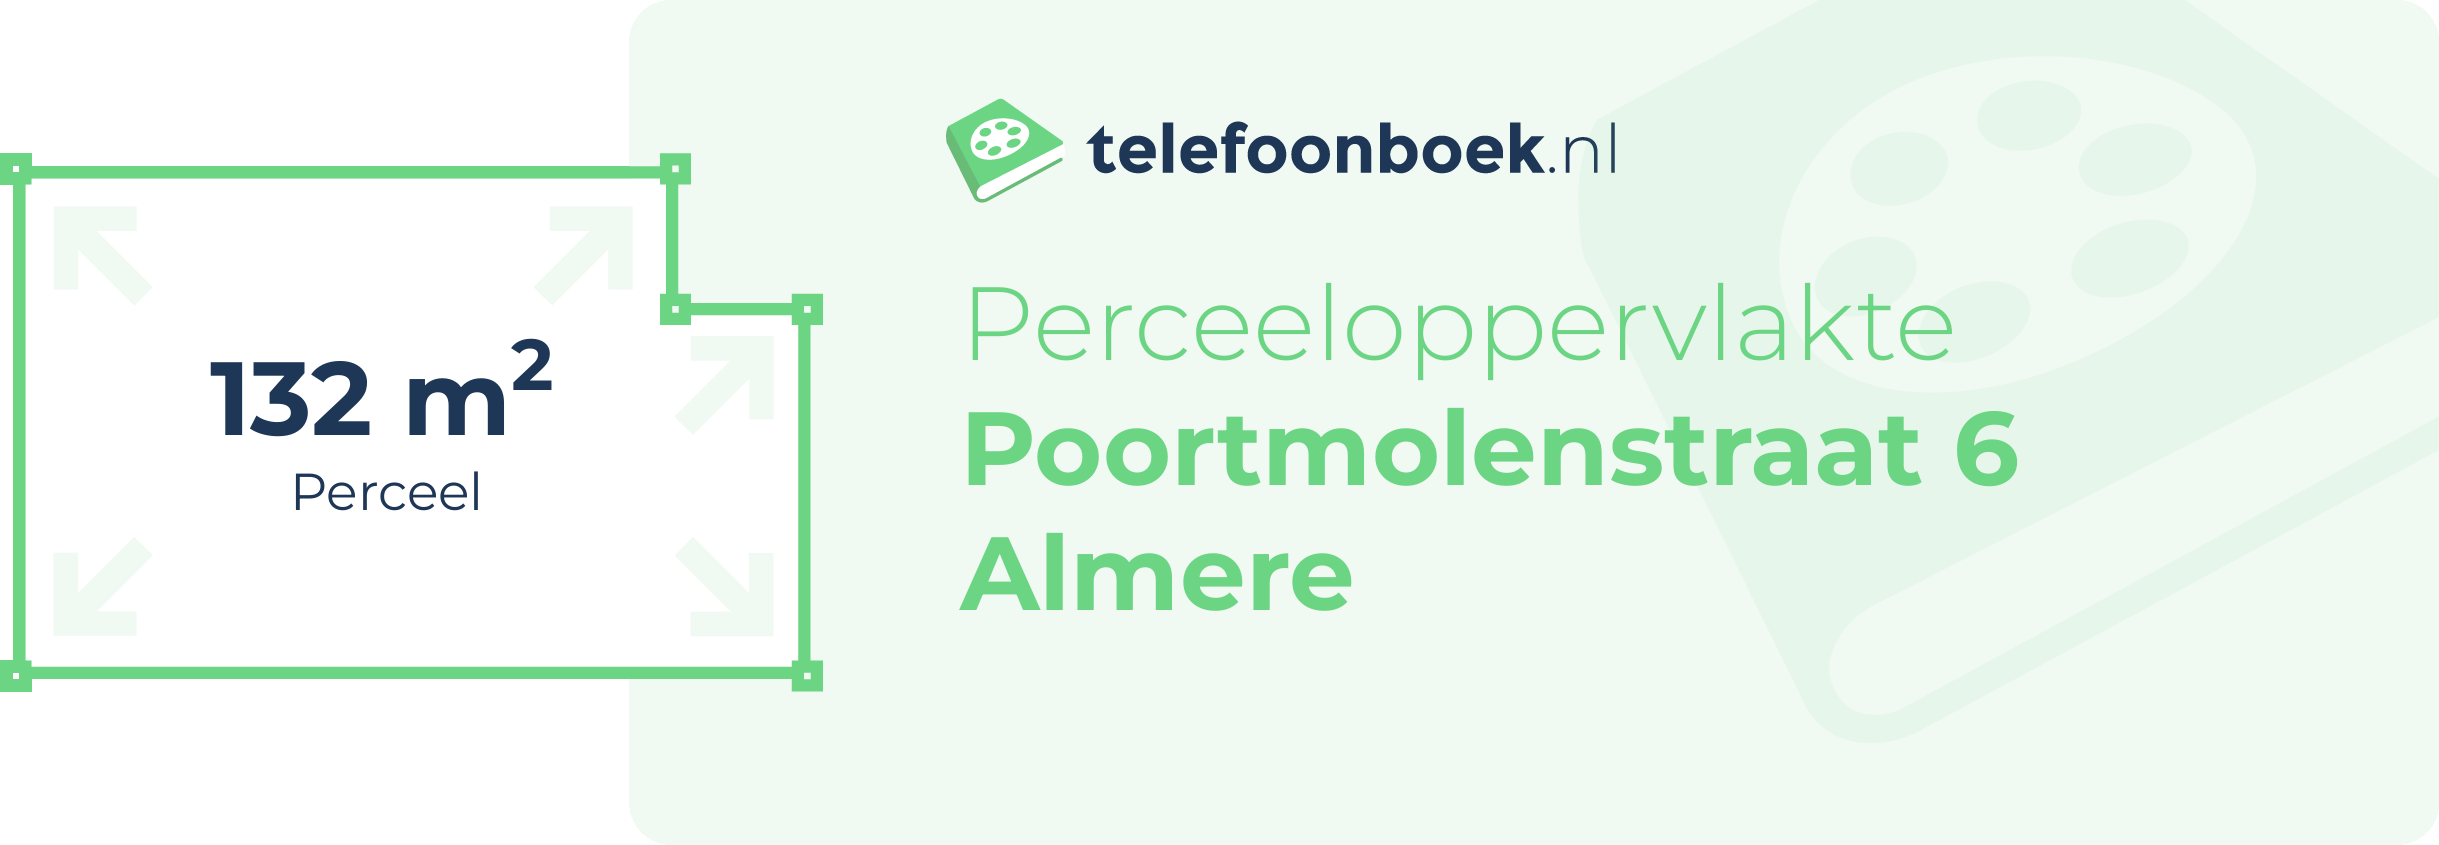 Perceeloppervlakte Poortmolenstraat 6 Almere